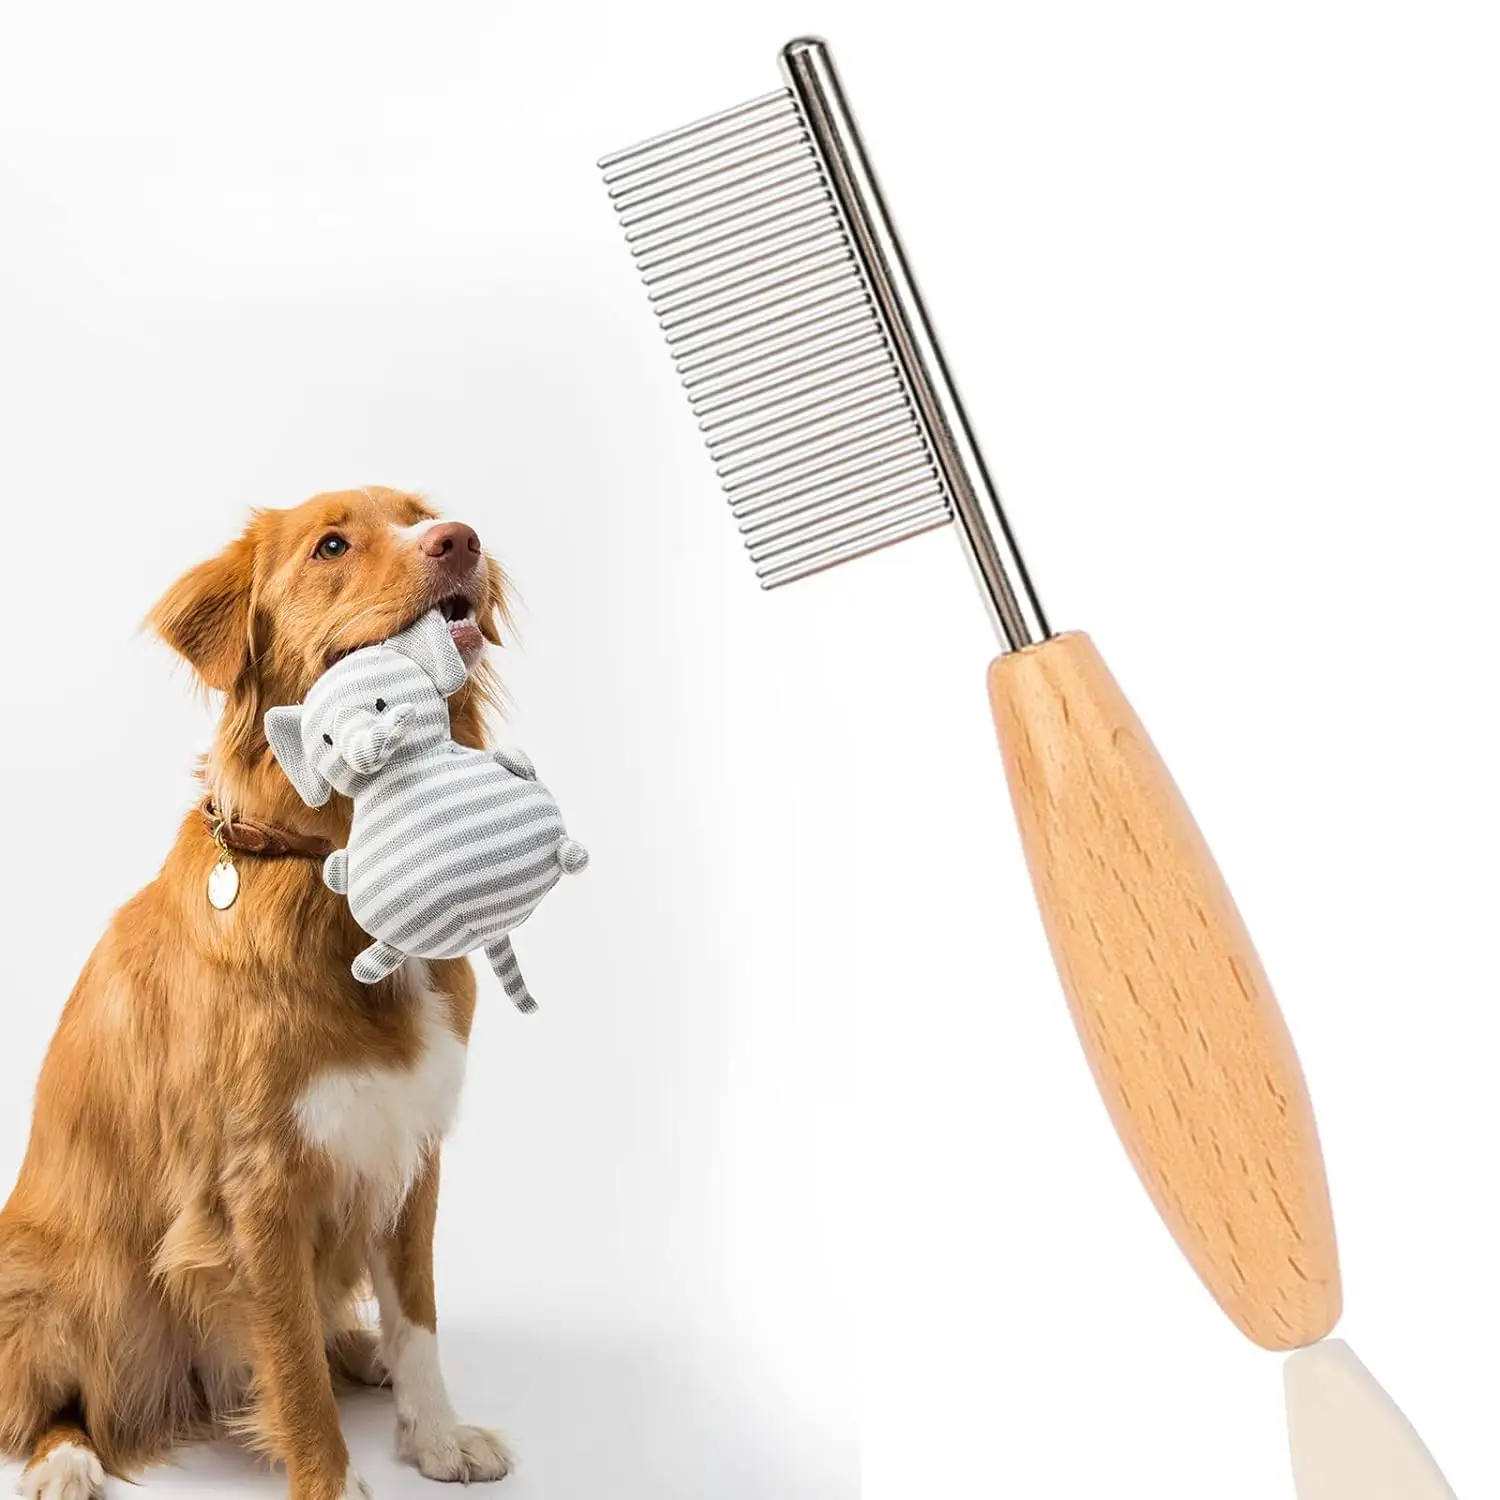 Mini peine portátil para mascotas, aplicable a la cara de perros y gatos, para eliminar lágrimas y limpiar profundamente el pelo de mascotas pequeñas